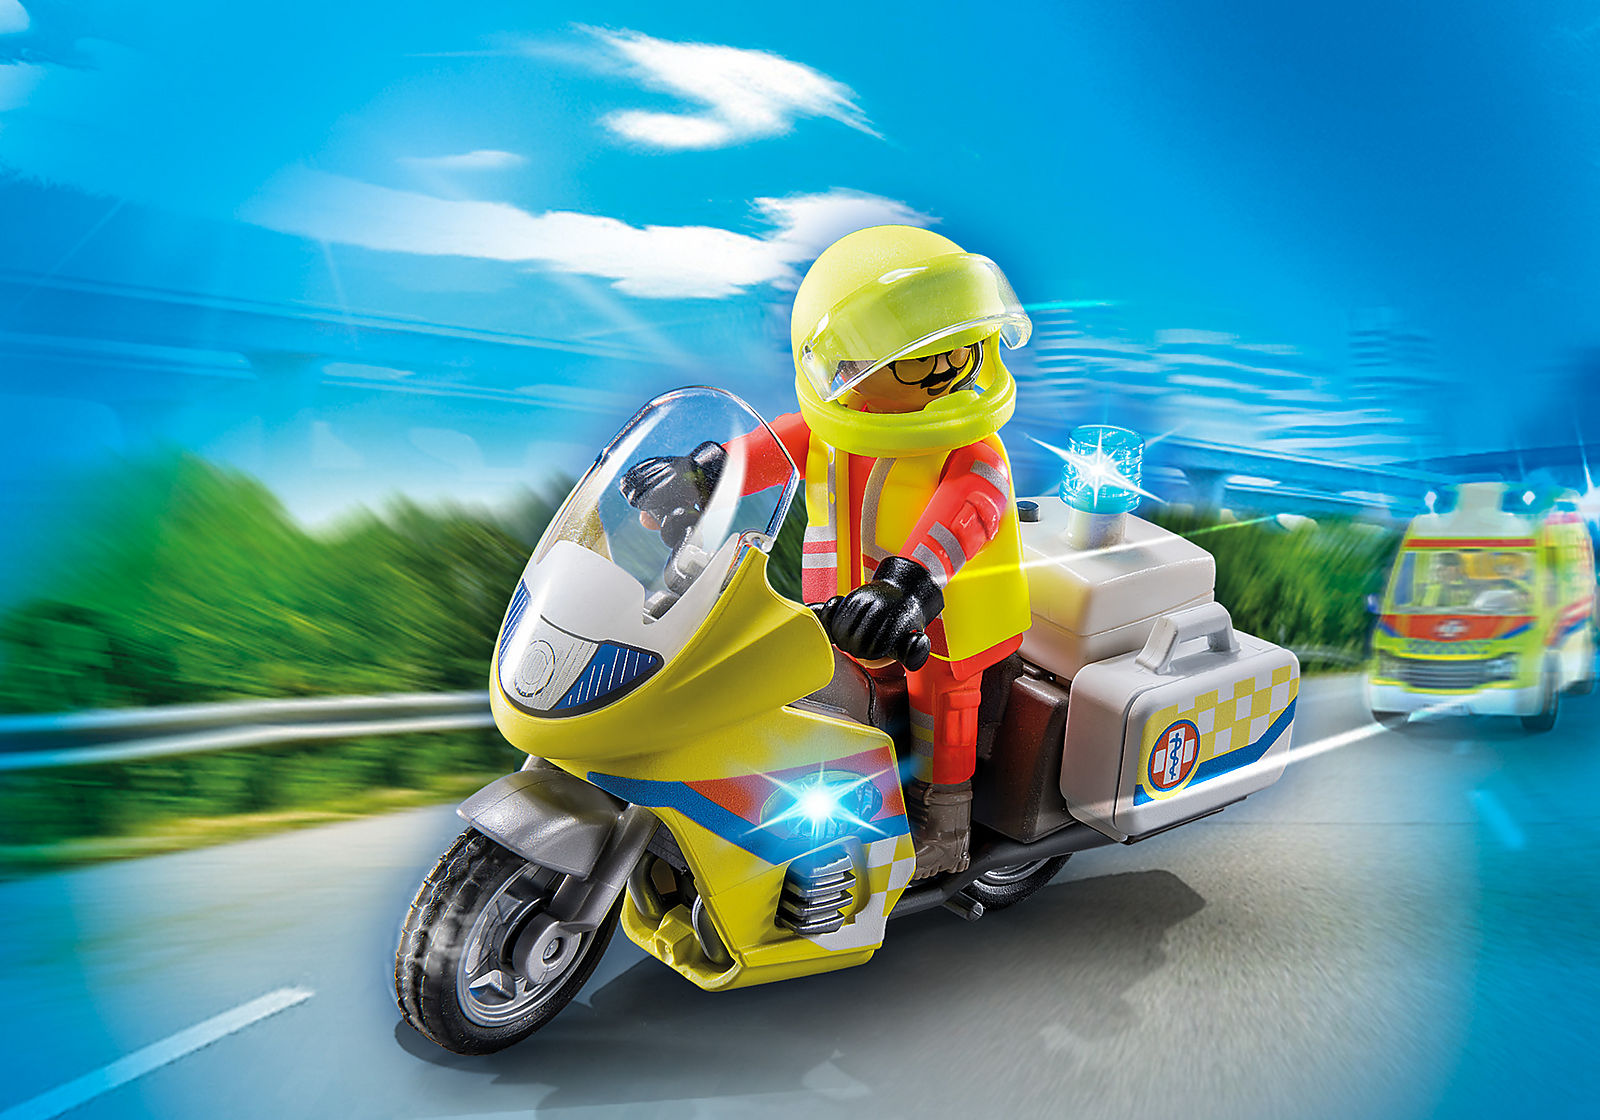 Playmobil City Life: Moto de Emergencias con luz intermiente 71205